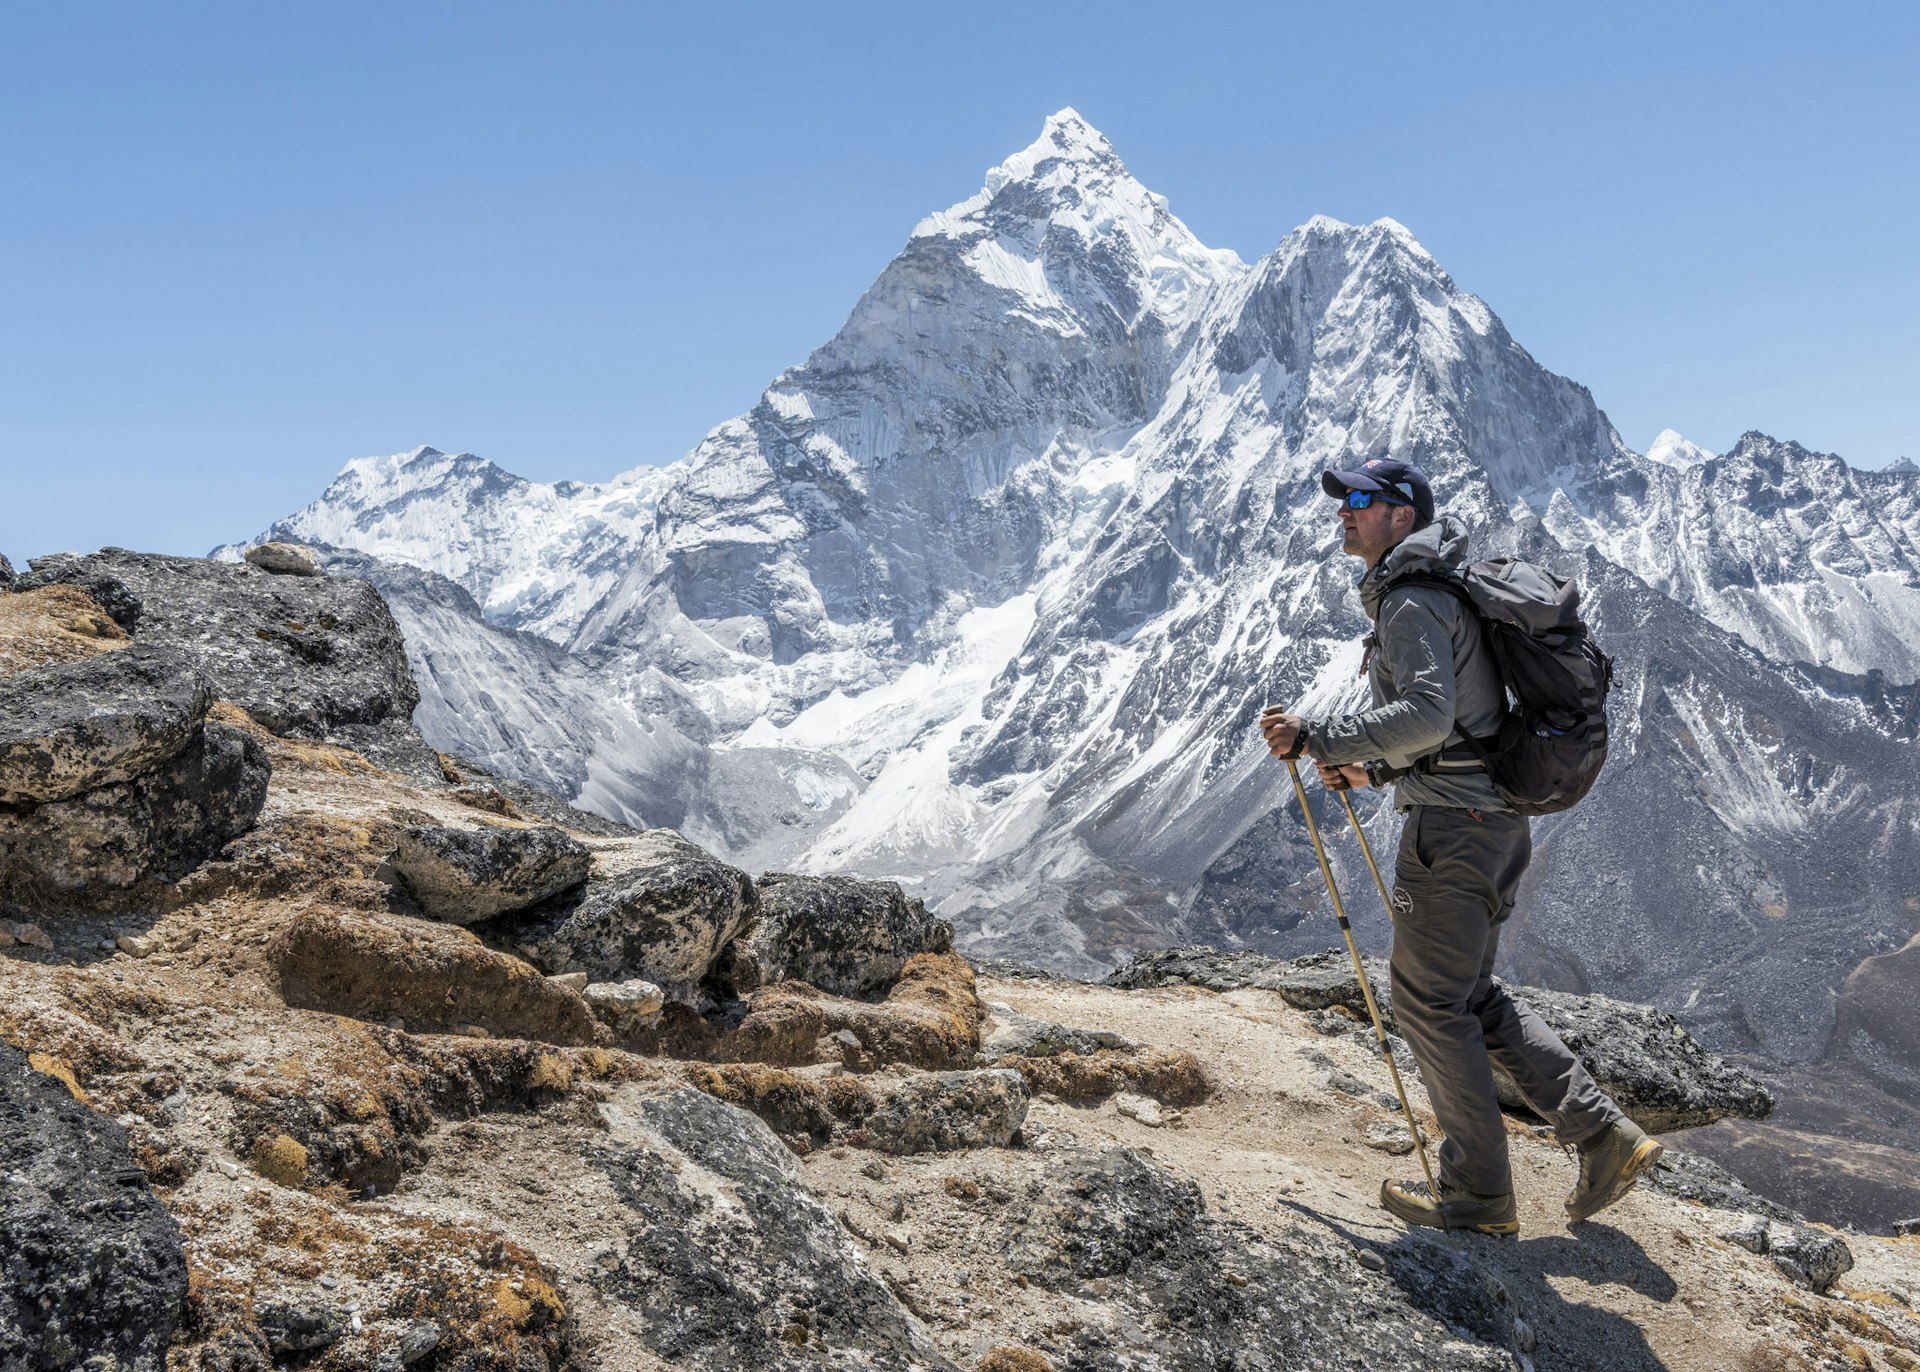 A trekker walking in a vast mountainous area